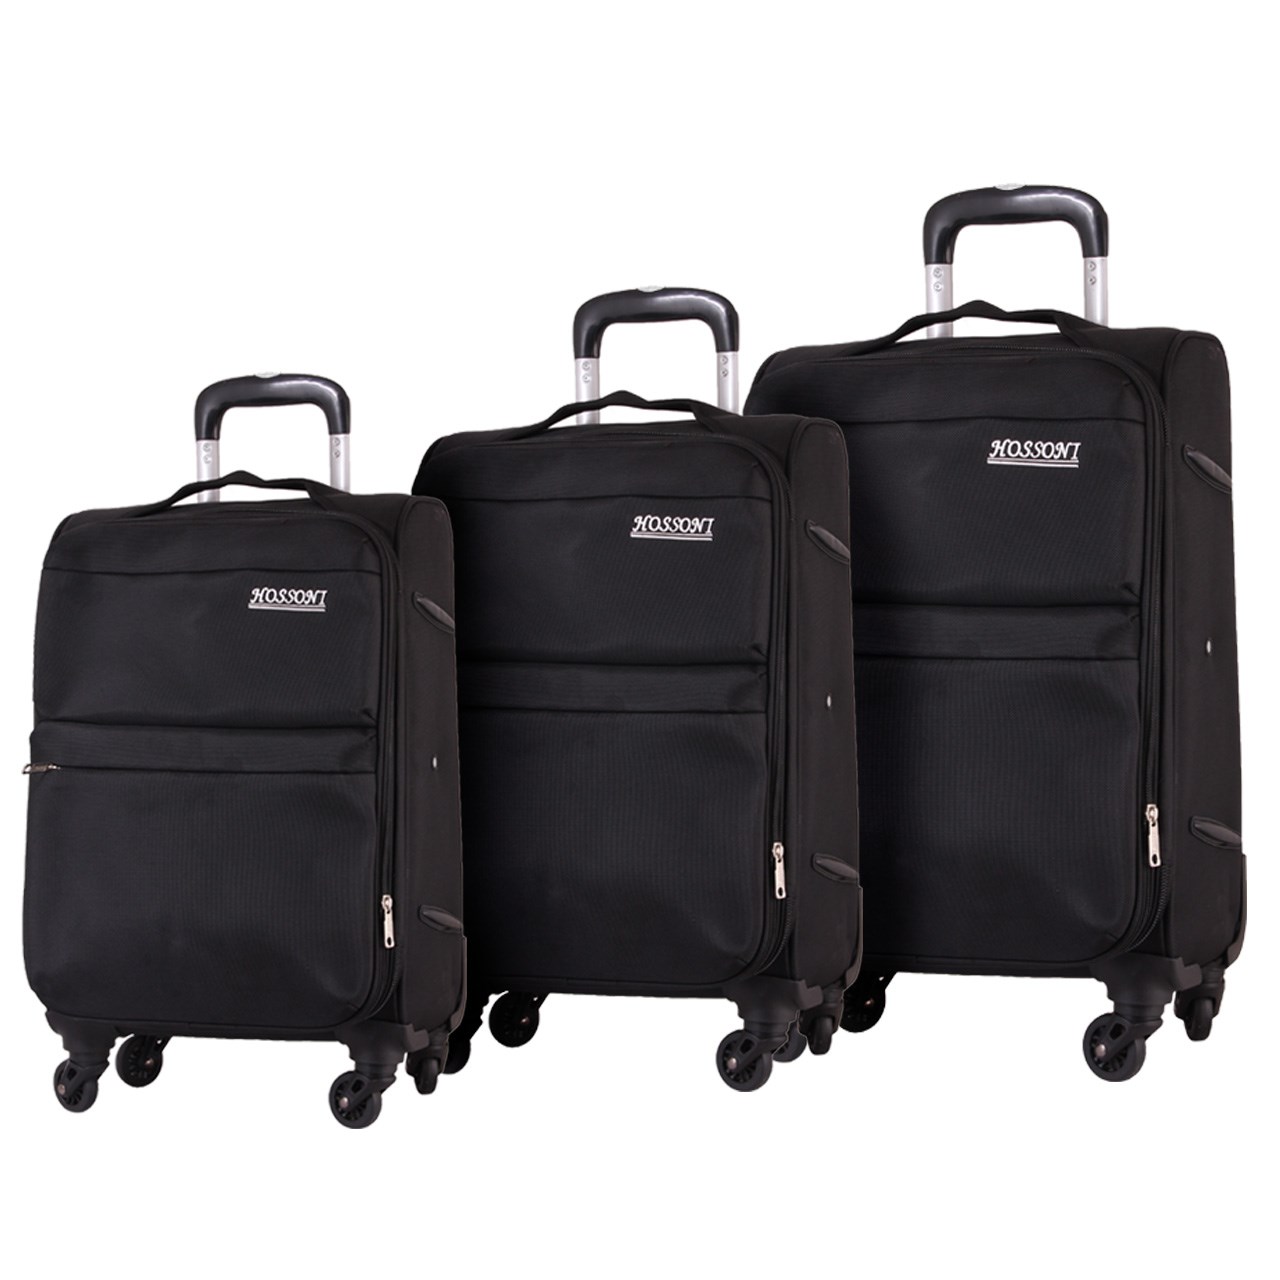 مجموعه سه عددی چمدان هوسنی مدل 1-8018